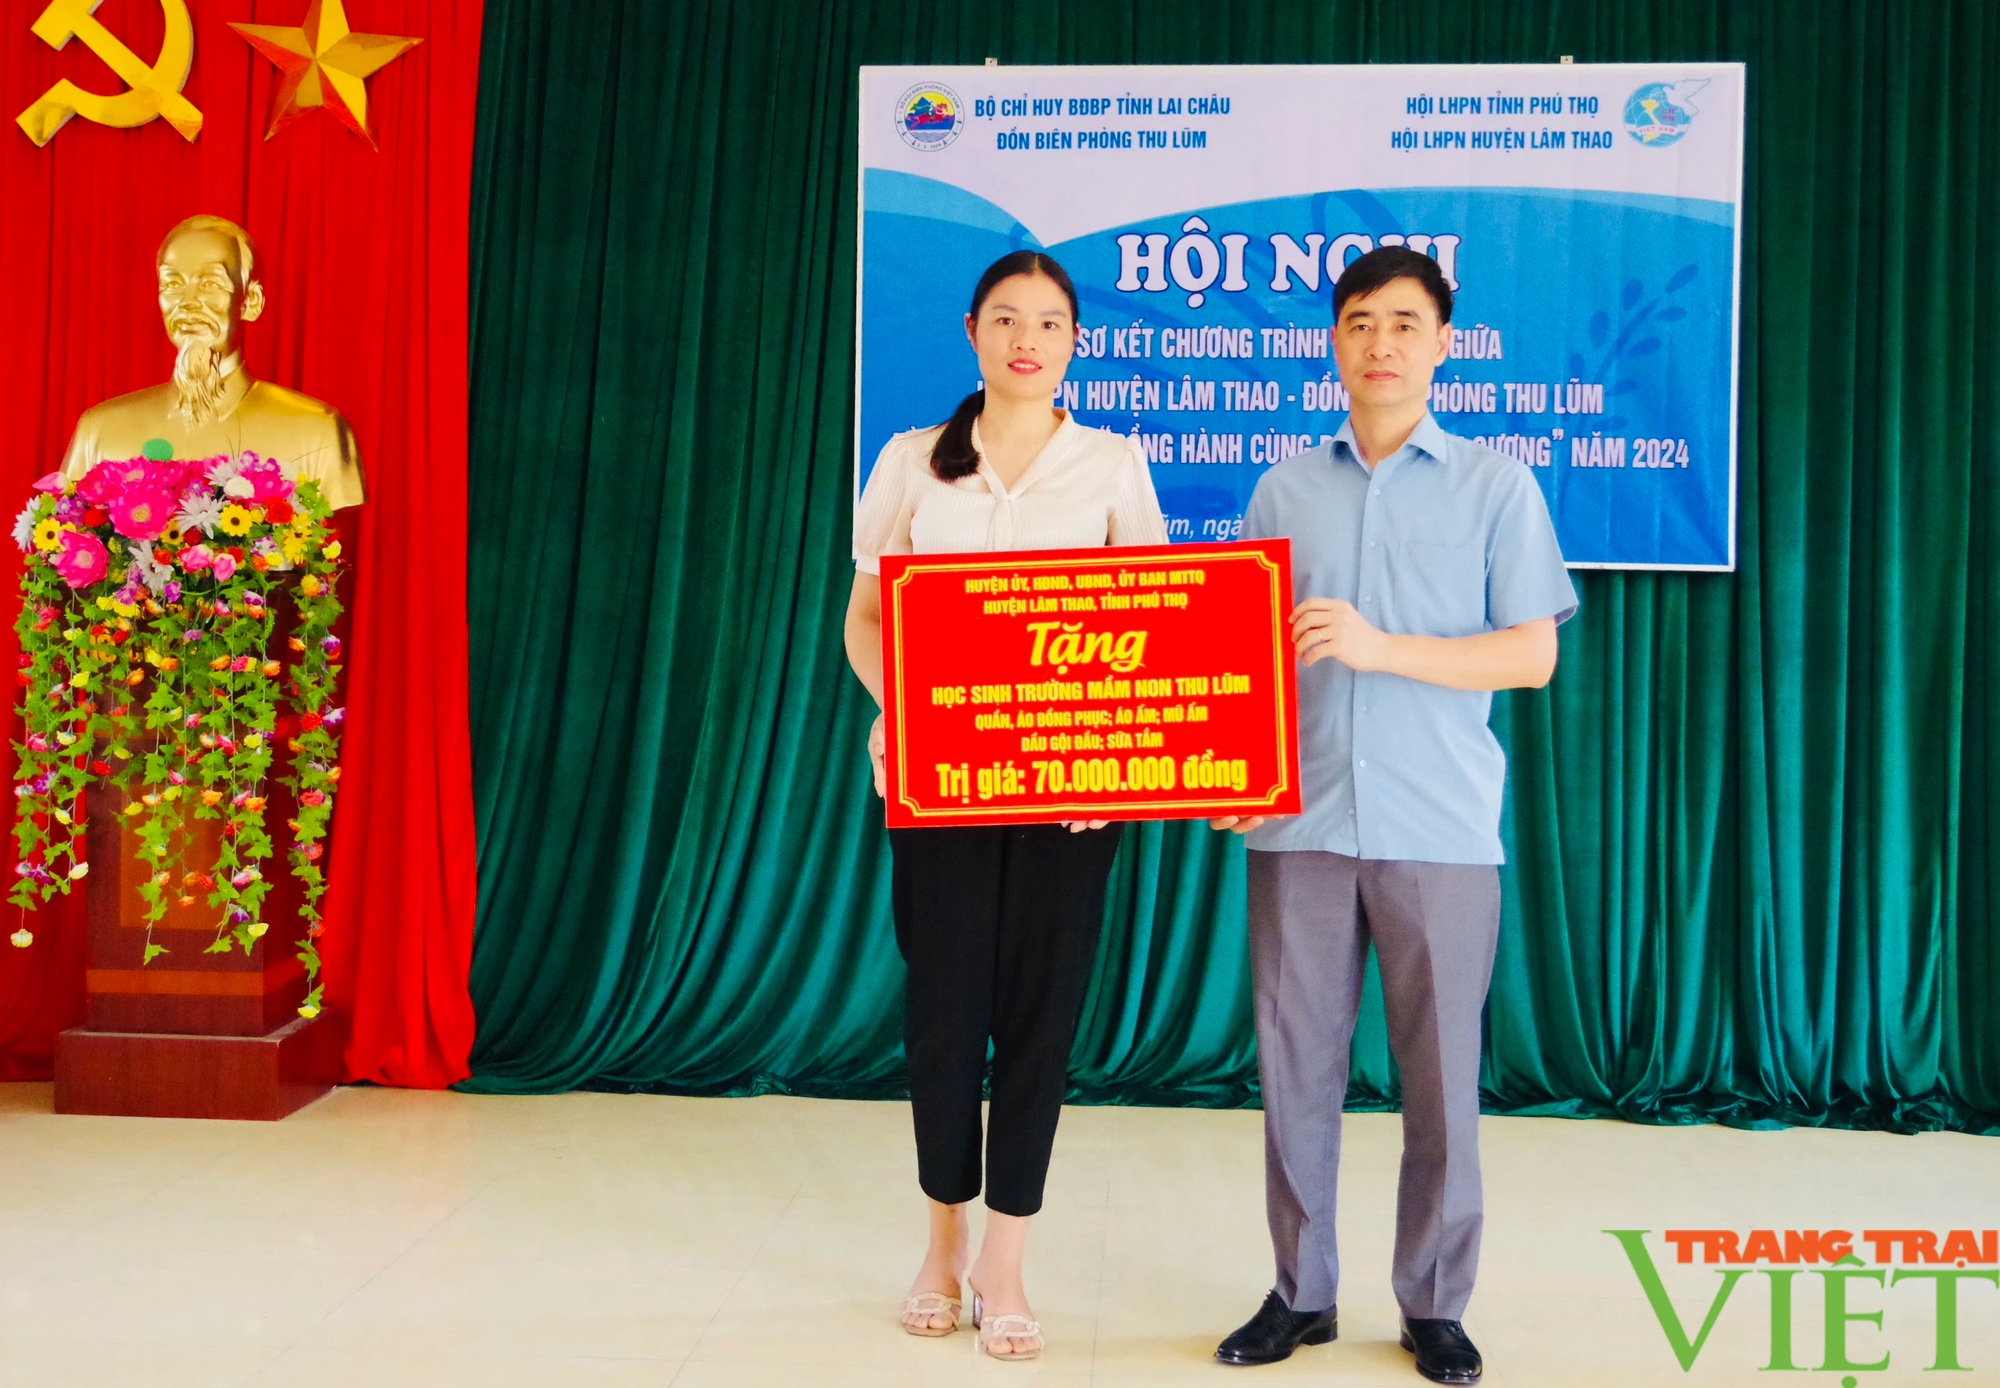 Lai Châu: Sơ kết chương trình phối hợp giữa Đồn Biên phòng Thu Lũm và Hội LHPN huyện Lâm Thao, Phú Thọ- Ảnh 8.